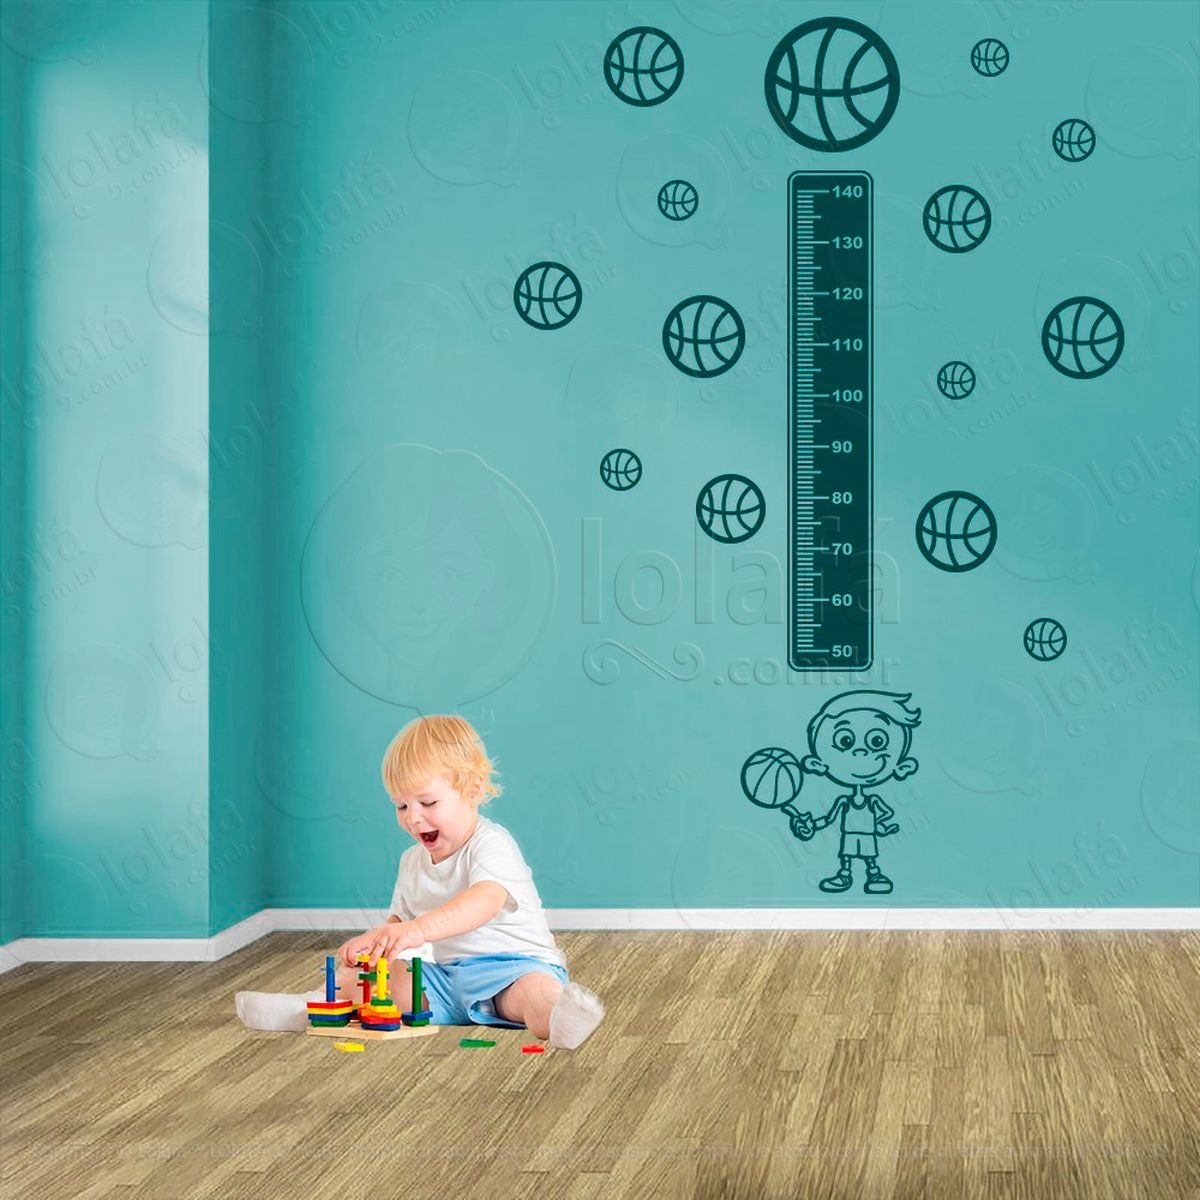 basquetebol e bolas de basquete adesivo régua de crescimento infantil, medidor de altura para quarto, porta e parede - mod:268